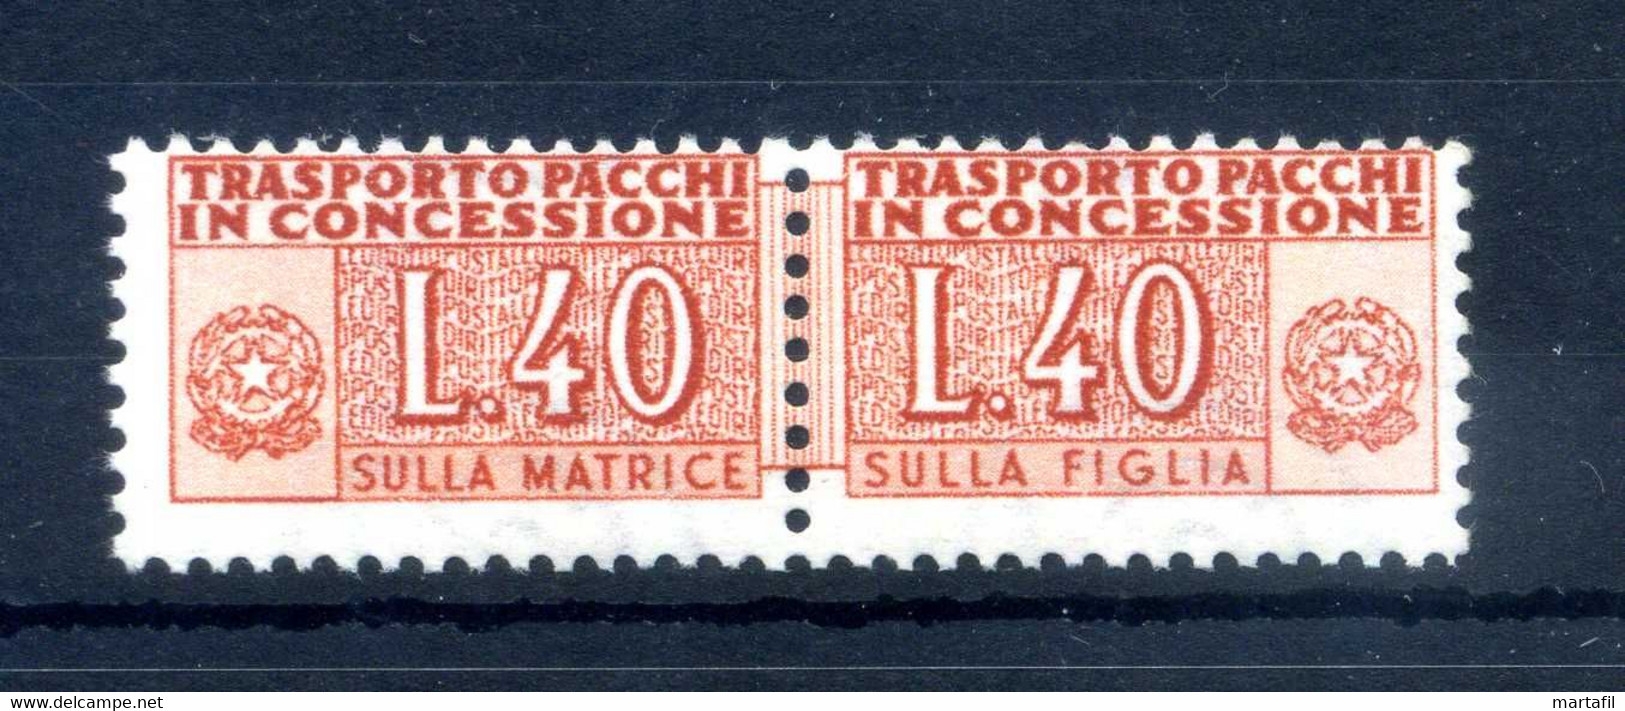 1953 REP. IT. PACCHI CONCESSIONE N.1 MNH ** RUOTA ALATA - Colis-concession